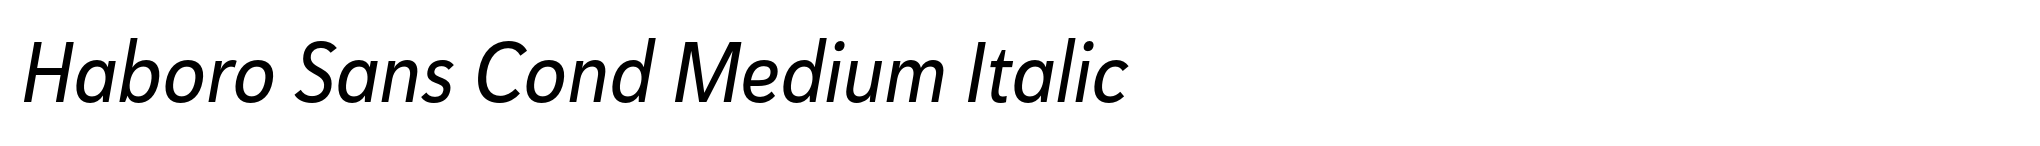 Haboro Sans Cond Medium Italic image